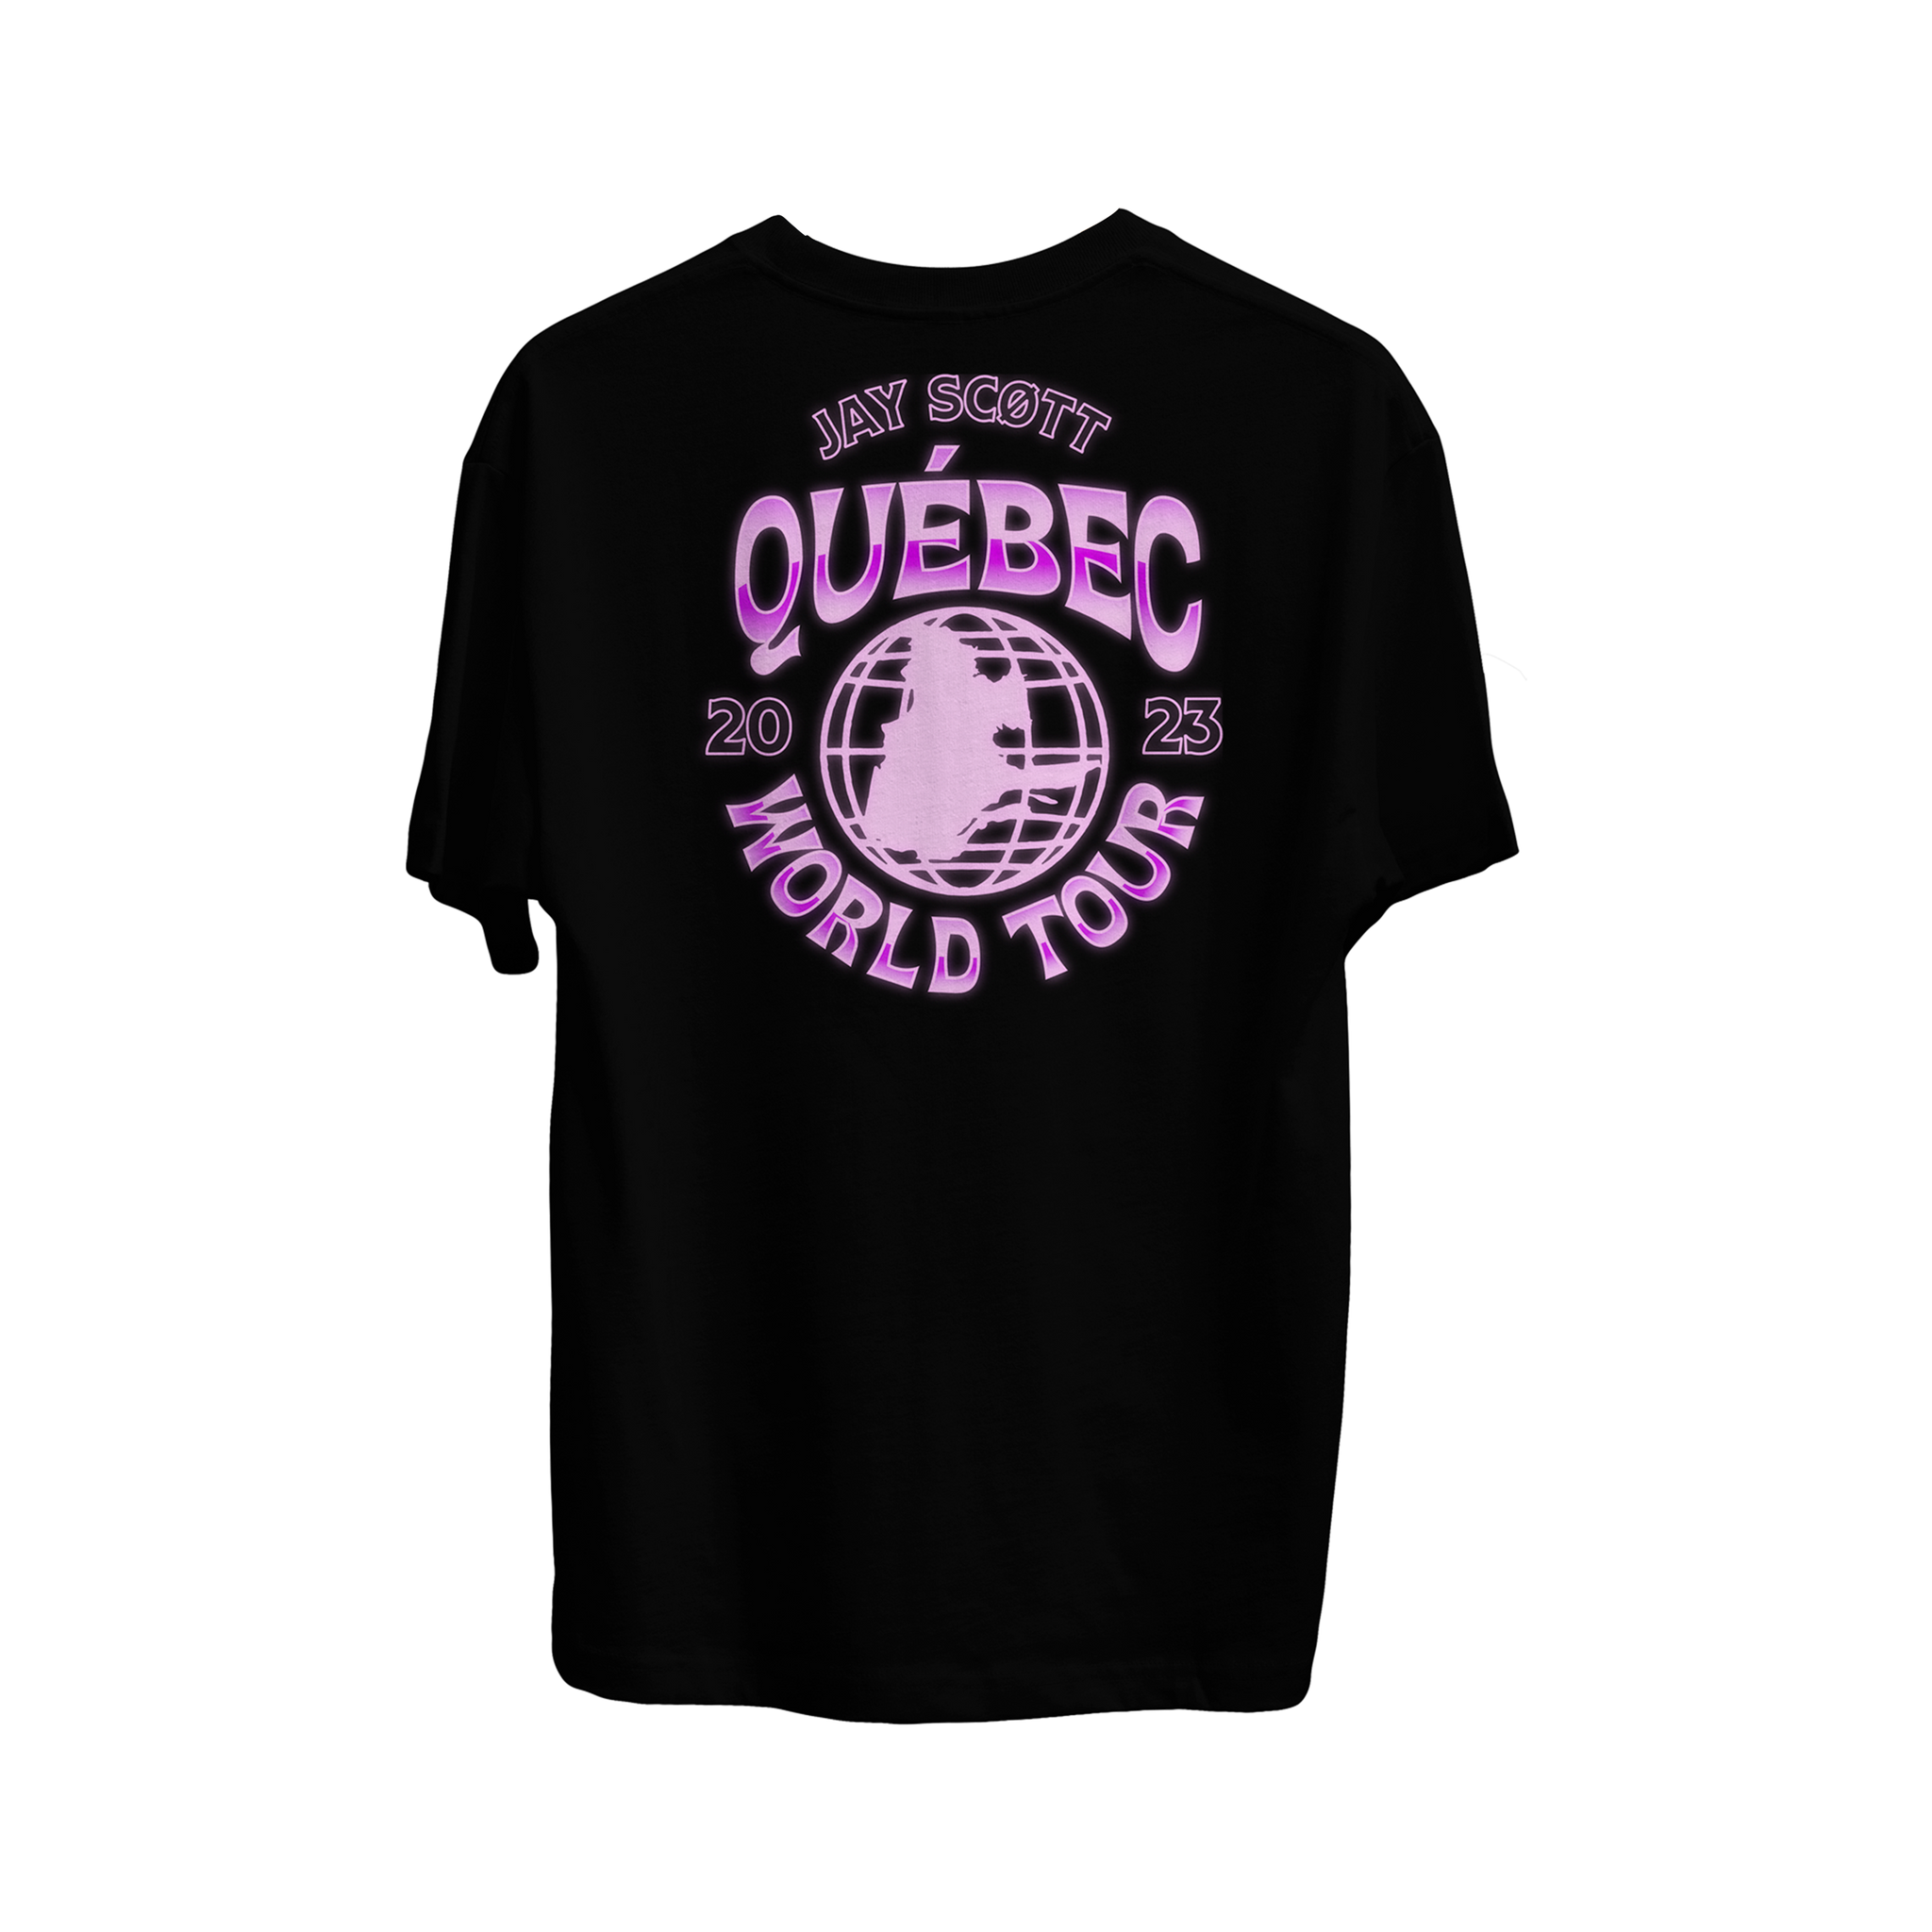 T-shirt Québec World Tour